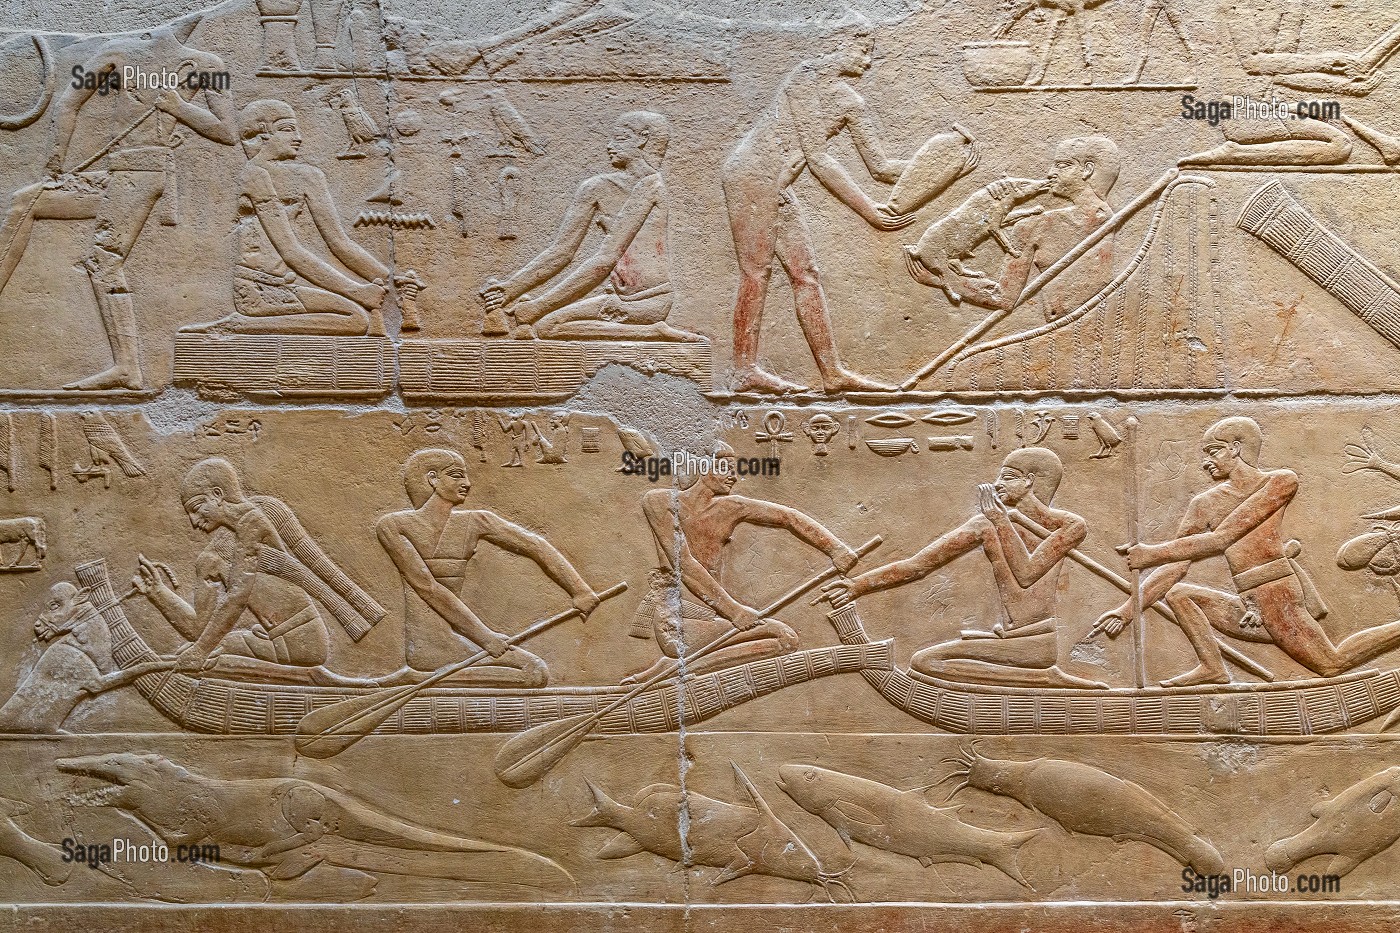 SCENES DE PECHE, D'ELEVAGE ET CULTURE, BAS-RELIEF DU MASTABA DE KAGEMNI, VIZIR DU PHARAON TETI DE LA IV EME DYNASTIE, NECROPOLE DE SAQQARAH, REGION DE MEMPHIS ANCIENNE CAPITALE DE L'EGYPTE ANTIQUE, LE CAIRE, EGYPTE, AFRIQUE 